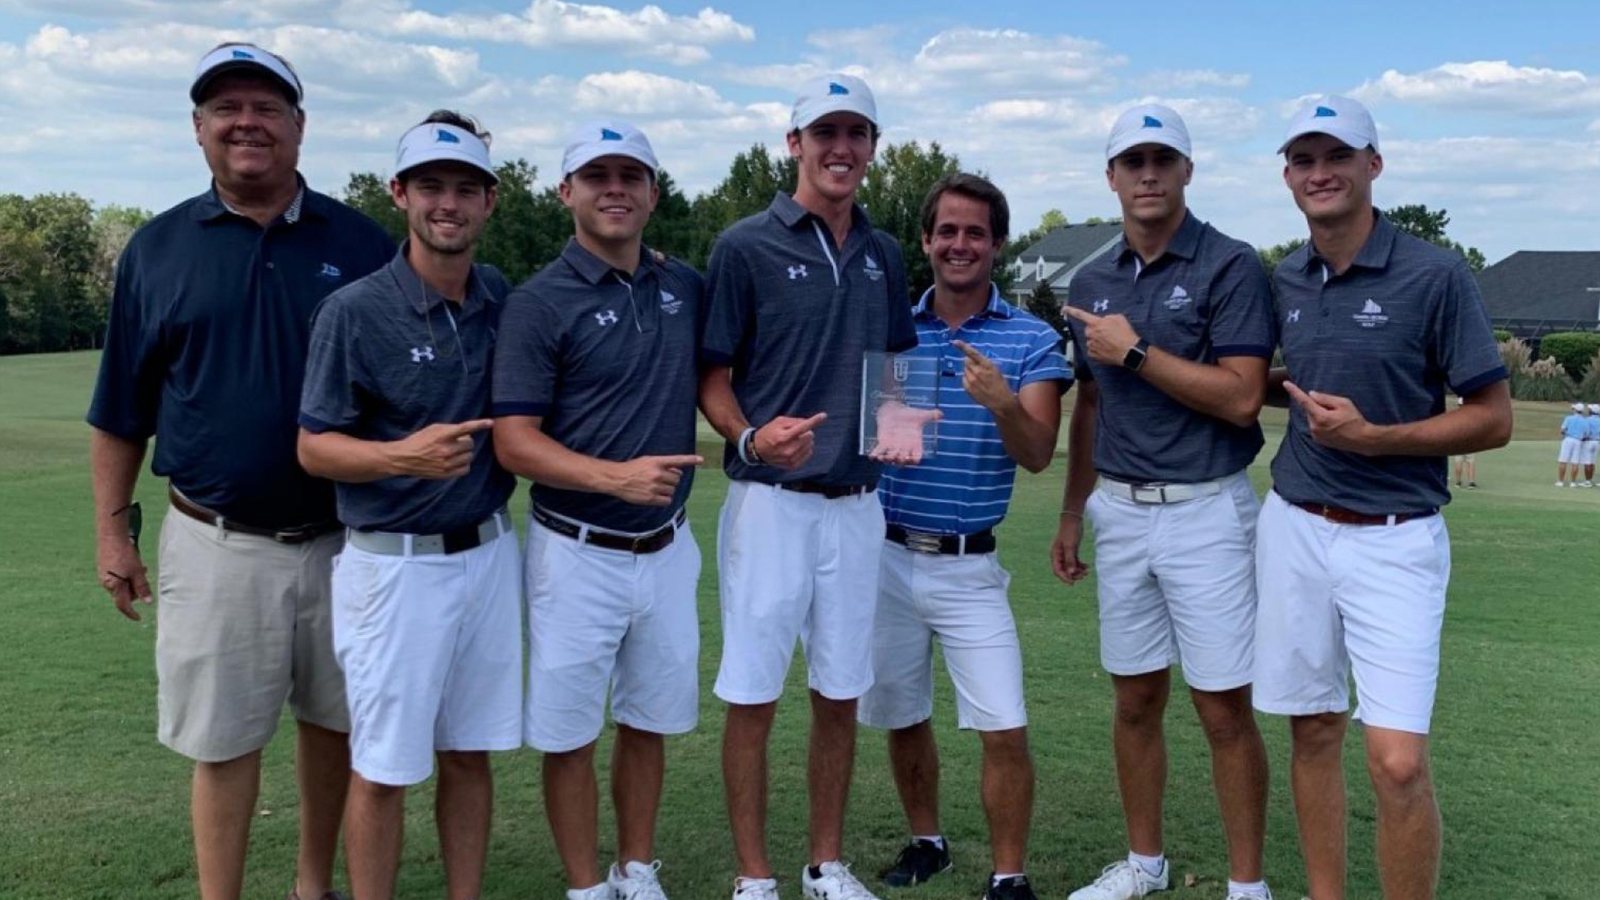 2019 NAIA Men's Golf Coaches' Top 25 Poll 1 (Oct. 11)